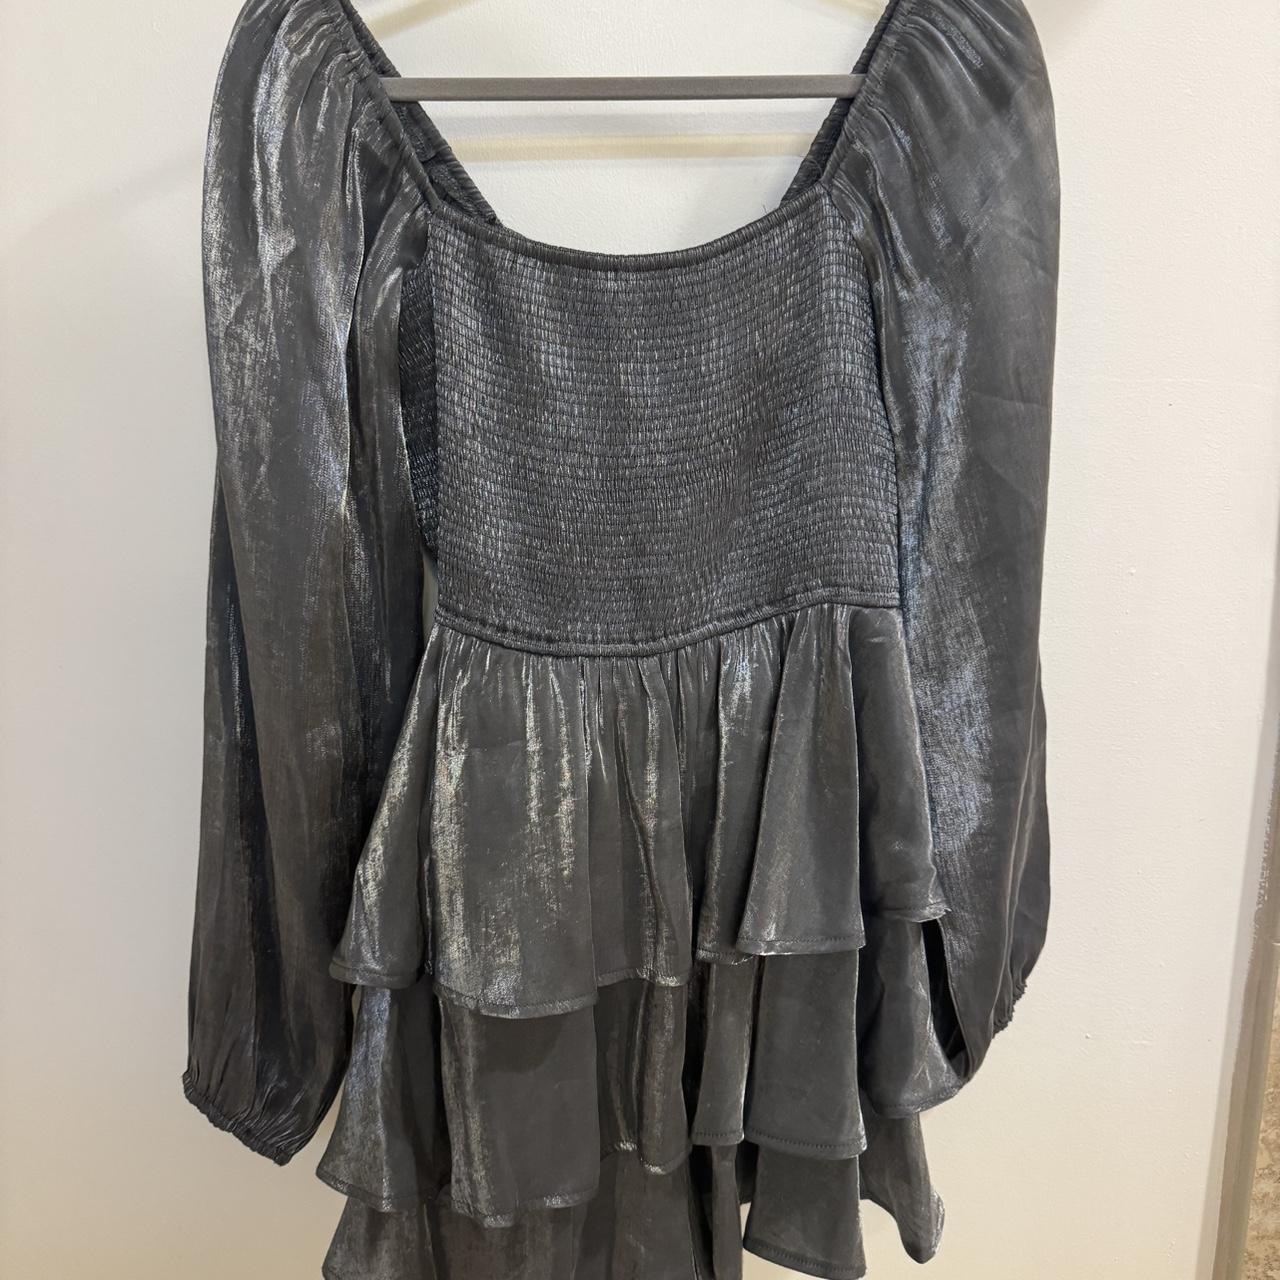 Metallic silver romper dress (L but fits M/L) worn... - Depop